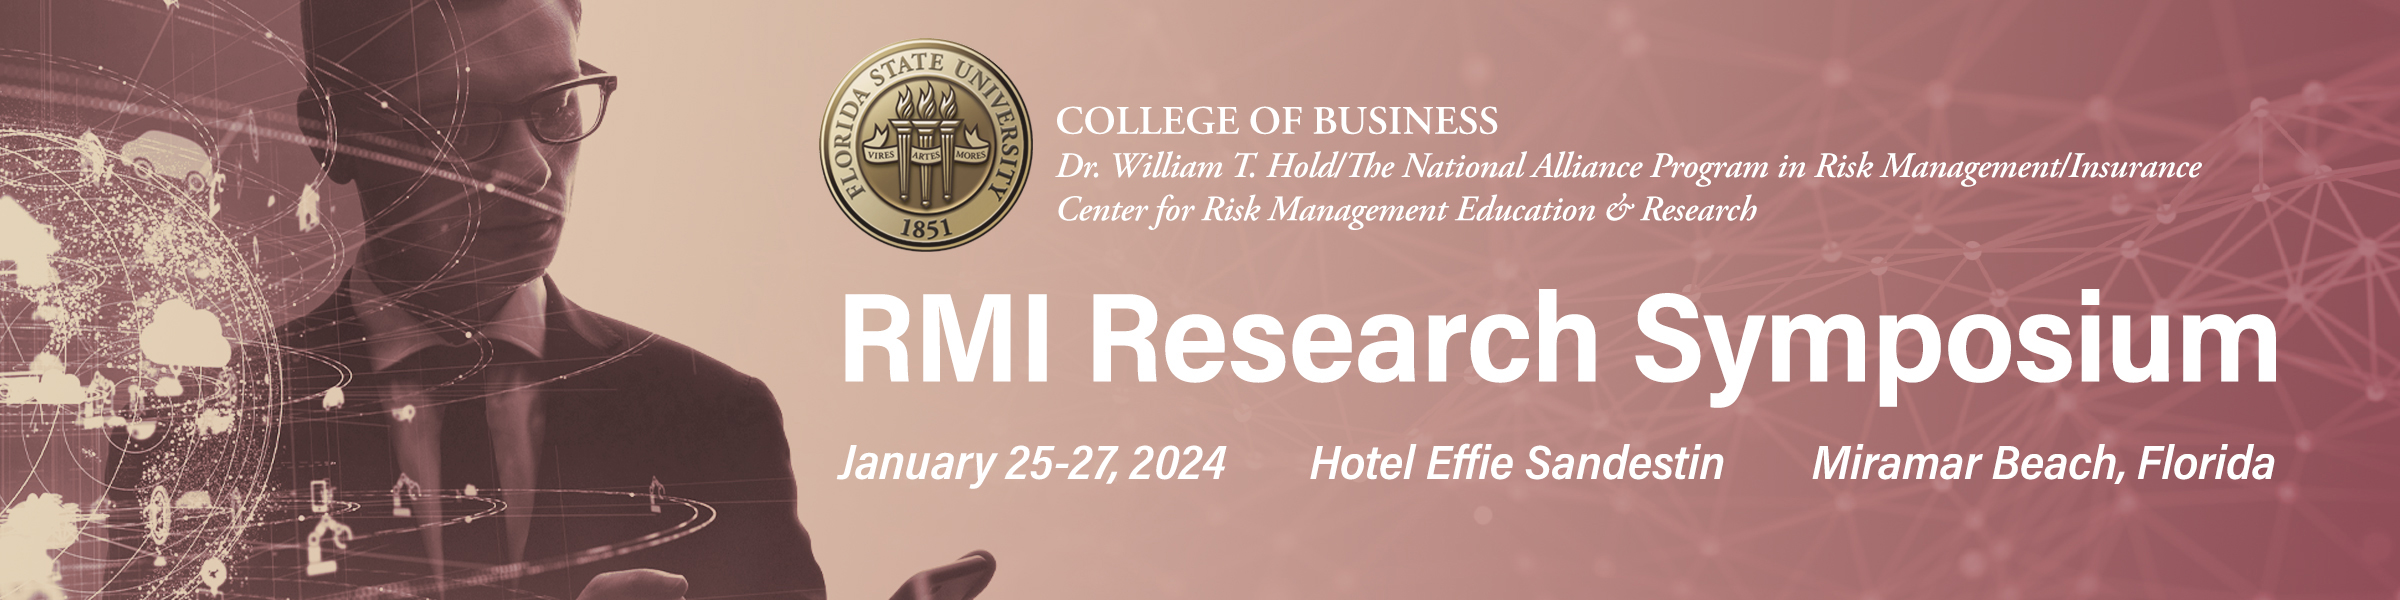 RMI Research Symposium